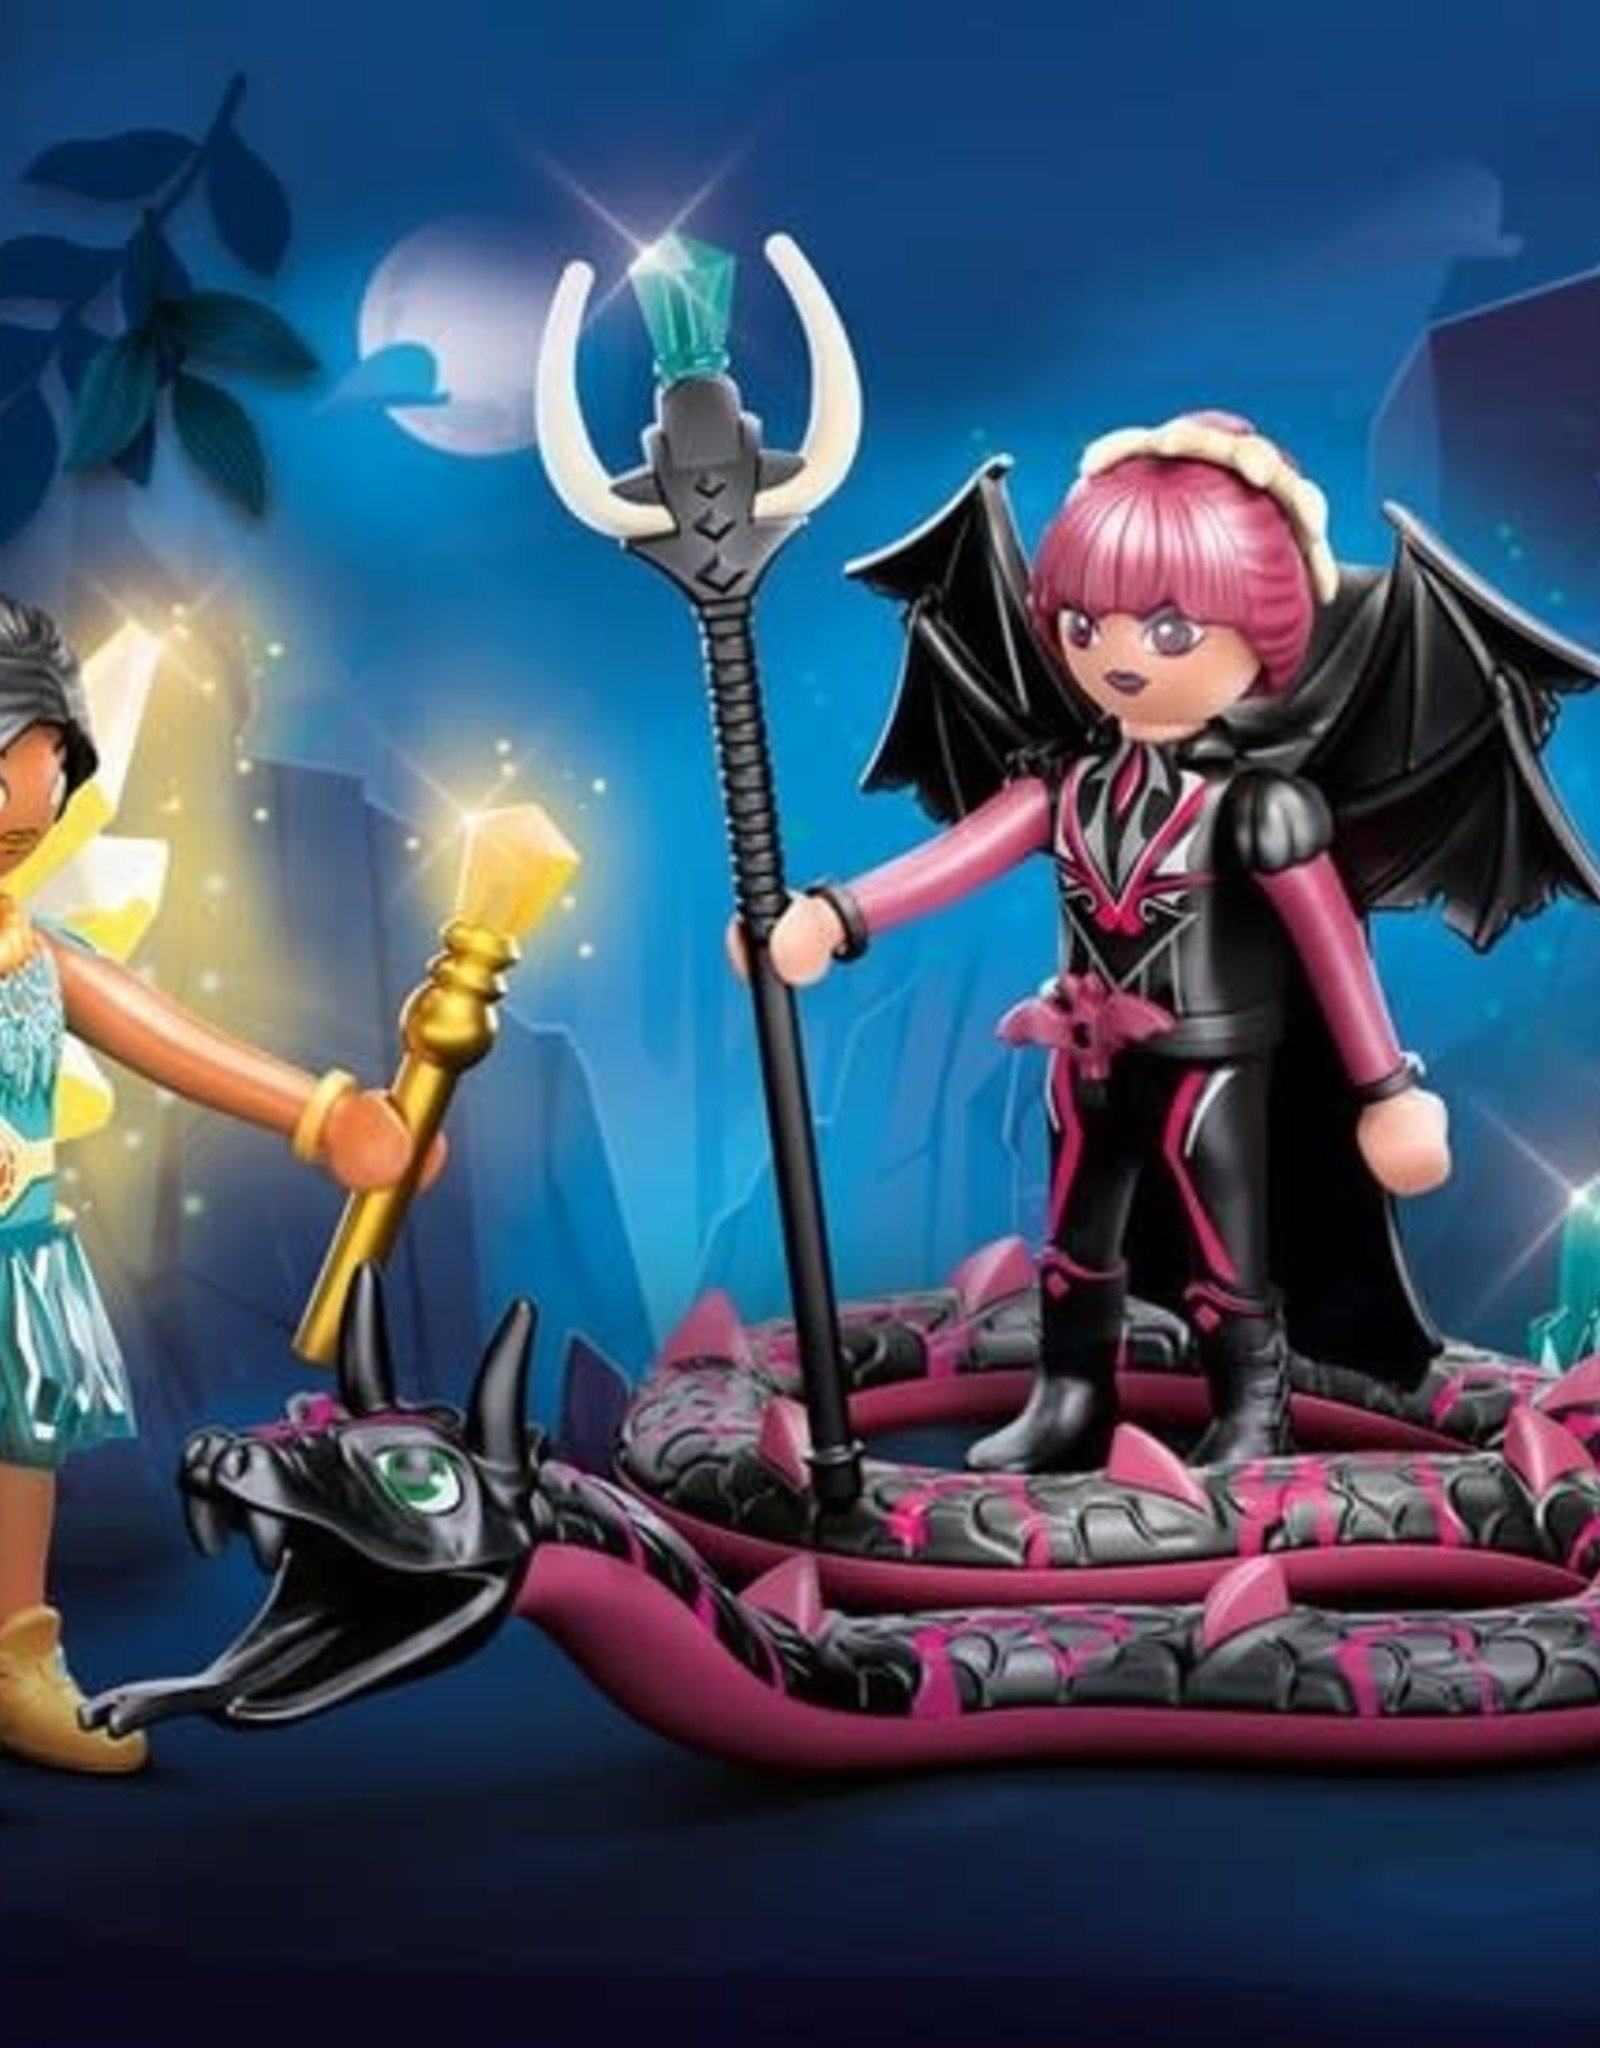 PLAYMOBIL Ayuma Crystal Fairy and Bat Fairy and Soul Animal